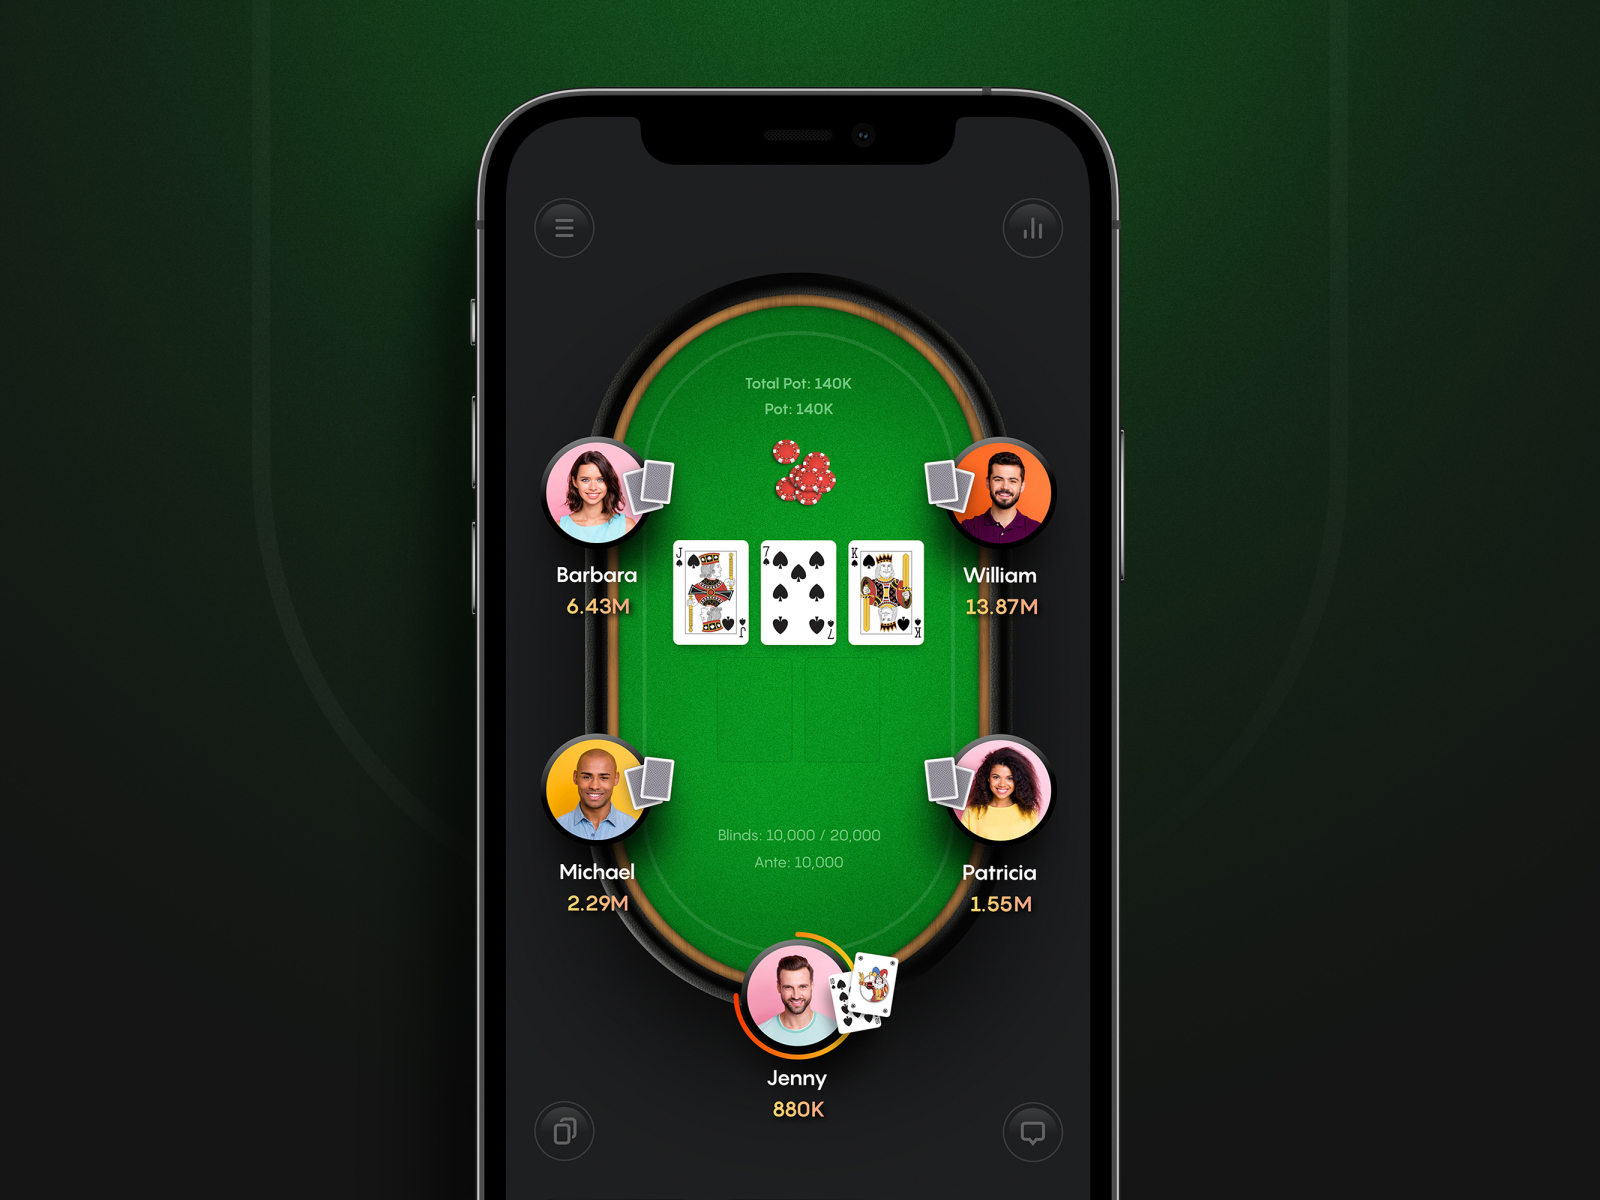 carbon poker mobile client